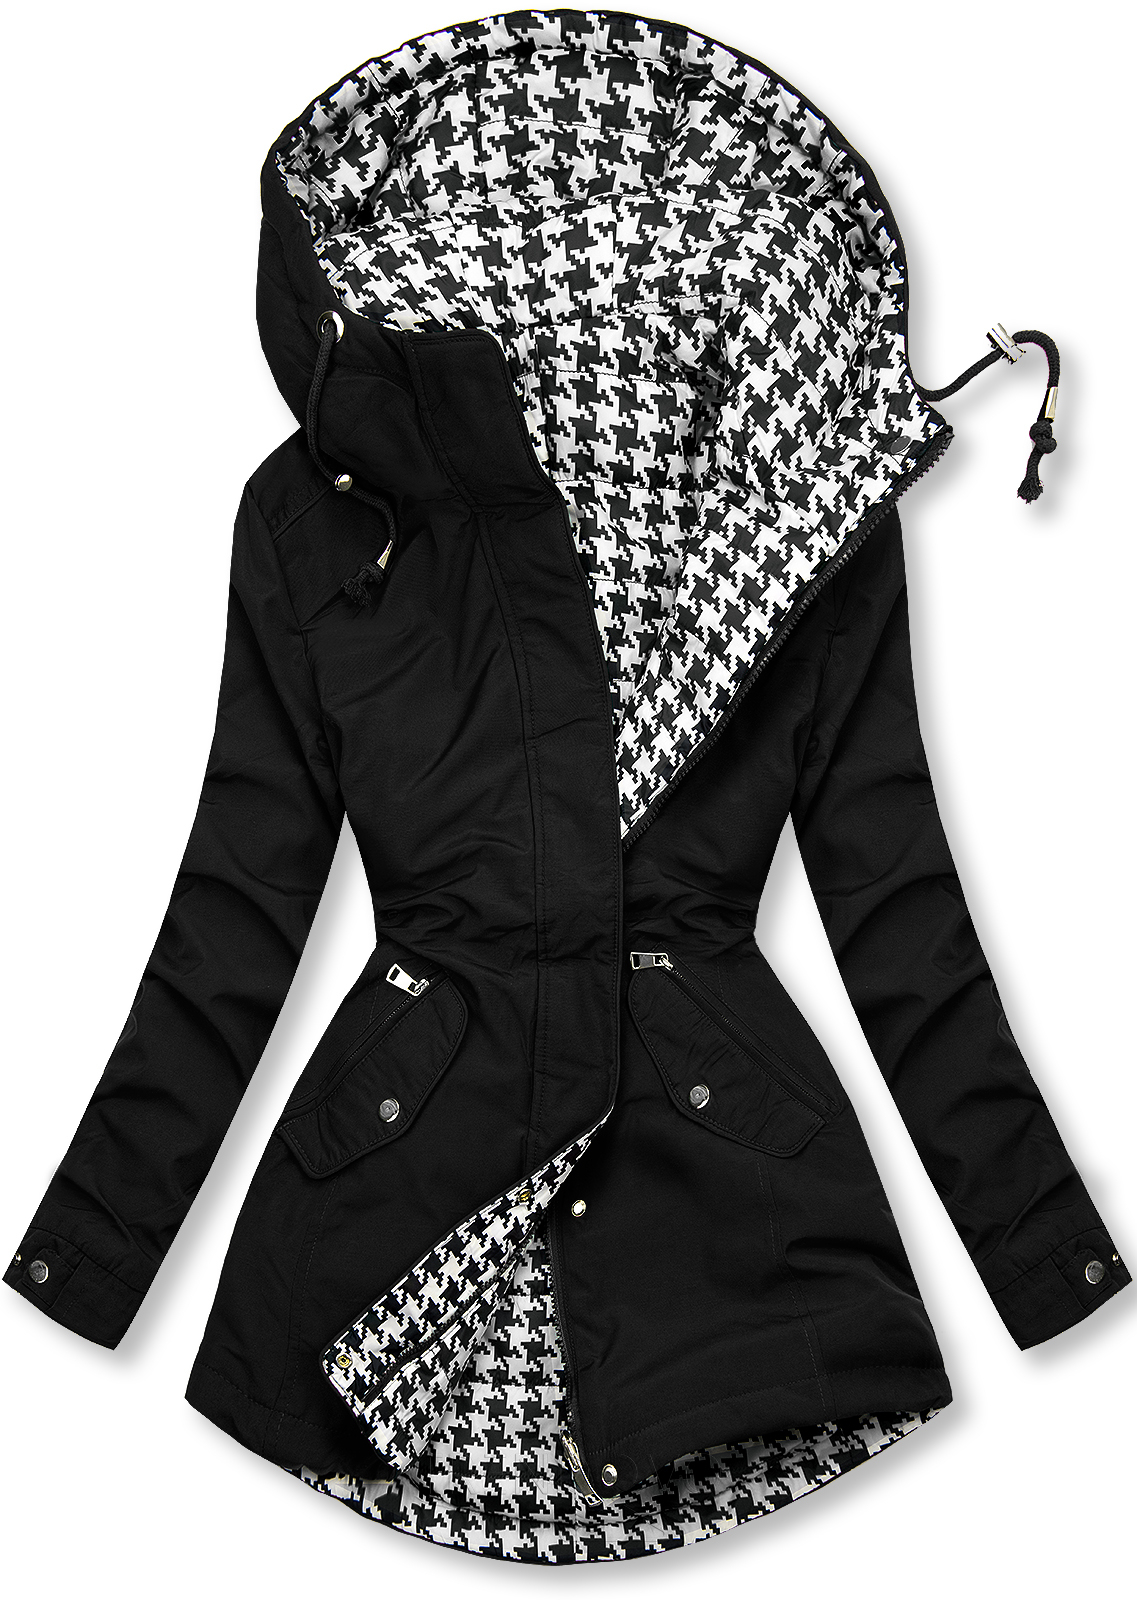 Čierna obojstranná bunda s pepito vzorom